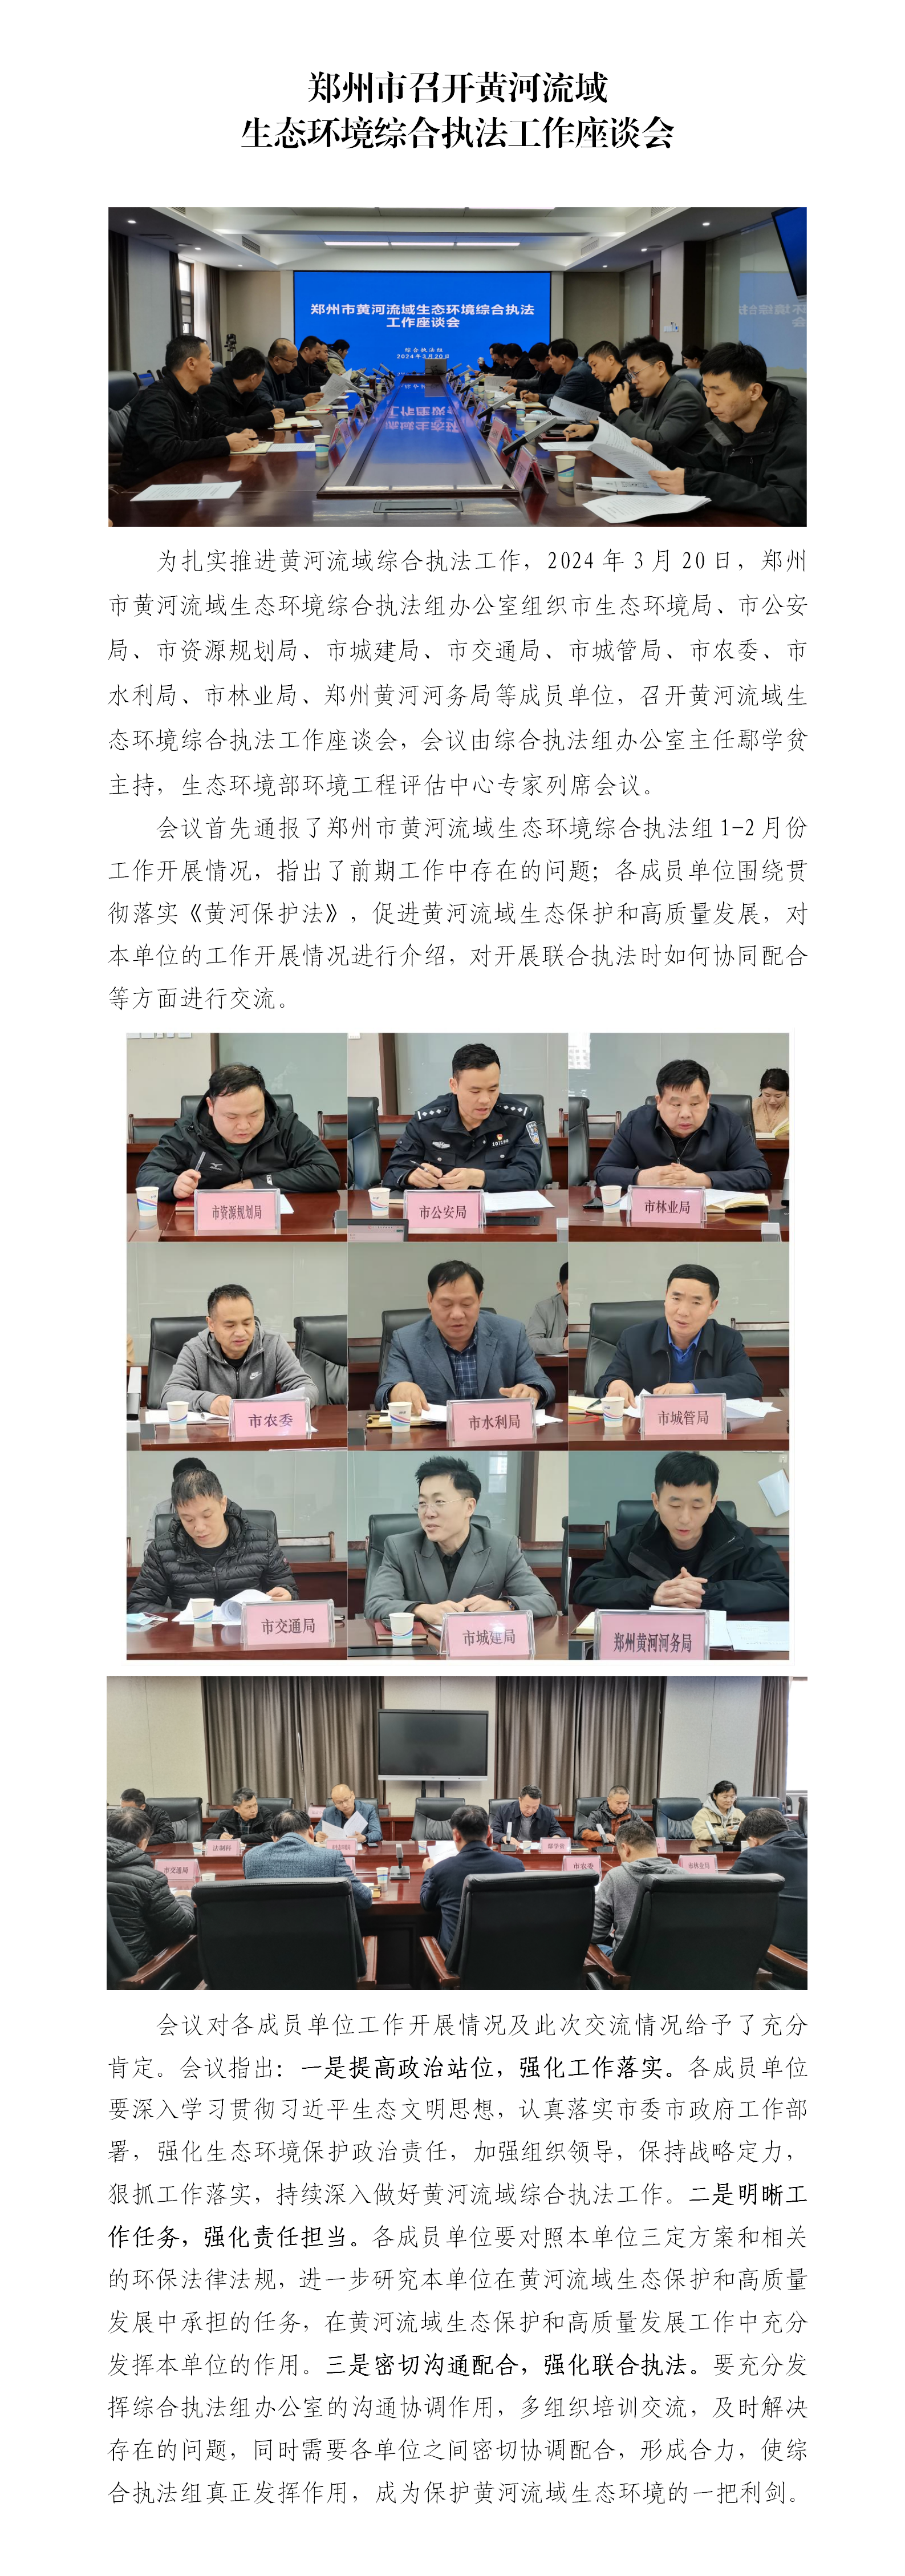 第4期 郑州市统召开黄河流域生态环境综合执法工作座谈会_01.png